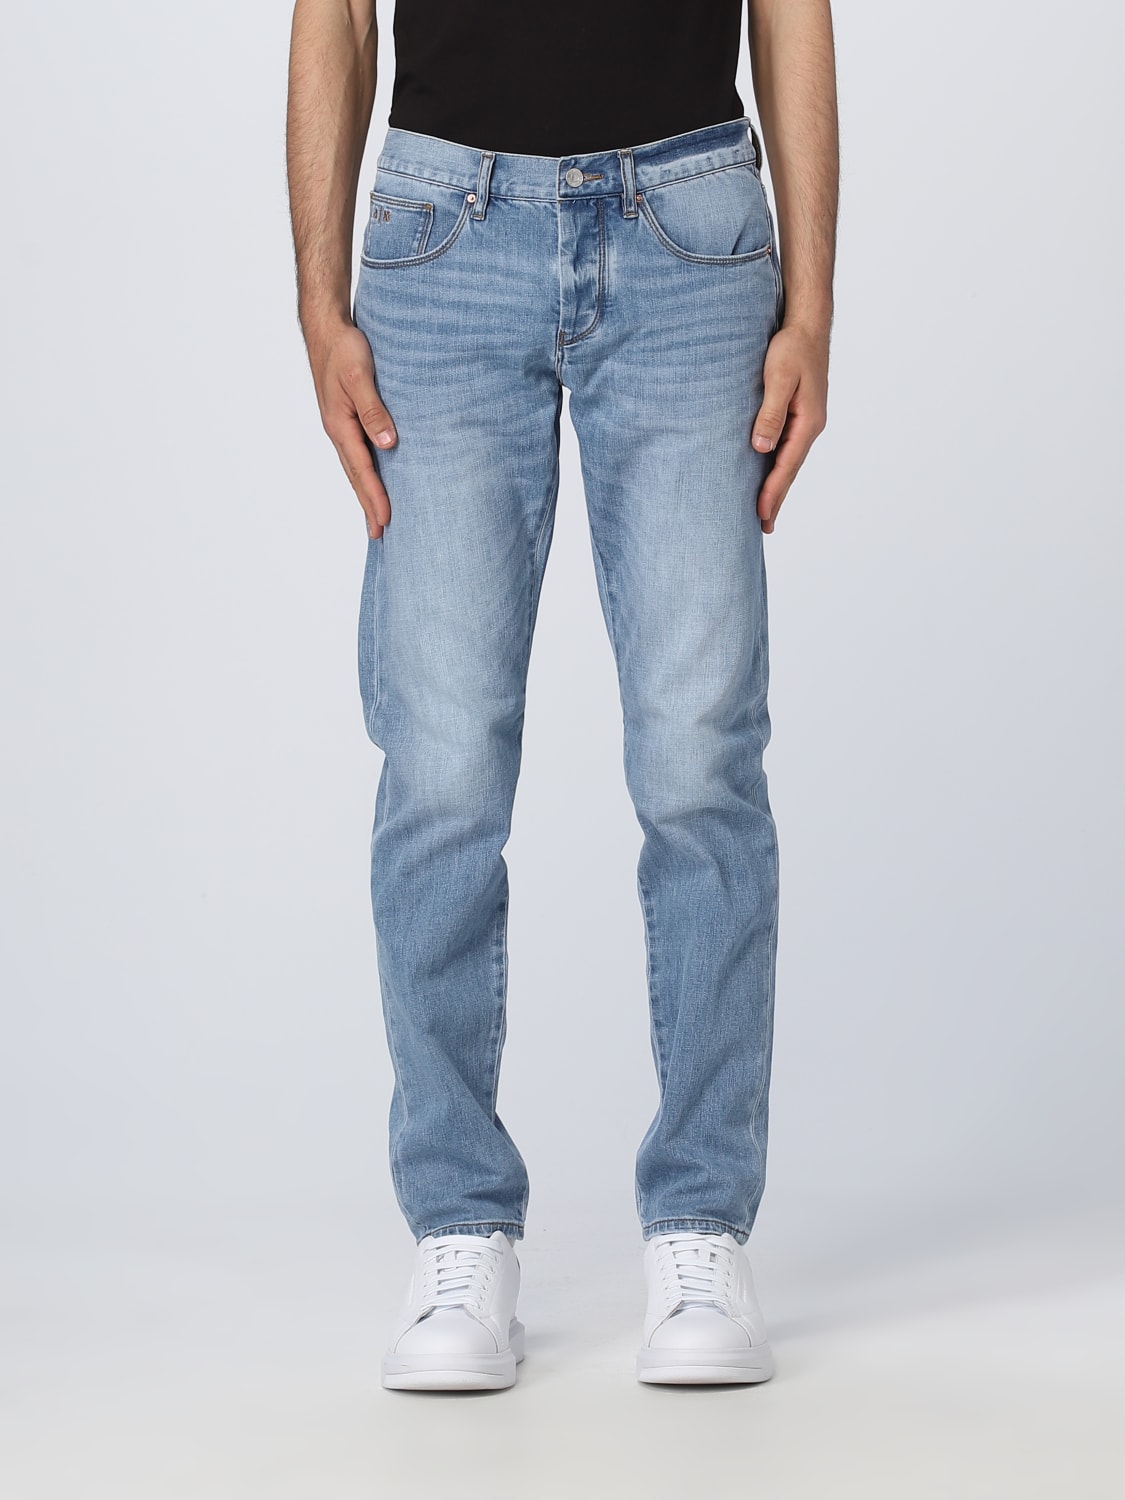 ARMANI jeans for - Indigo | Armani Exchange 3RZJ10Z3UGZ online on GIGLIO.COM